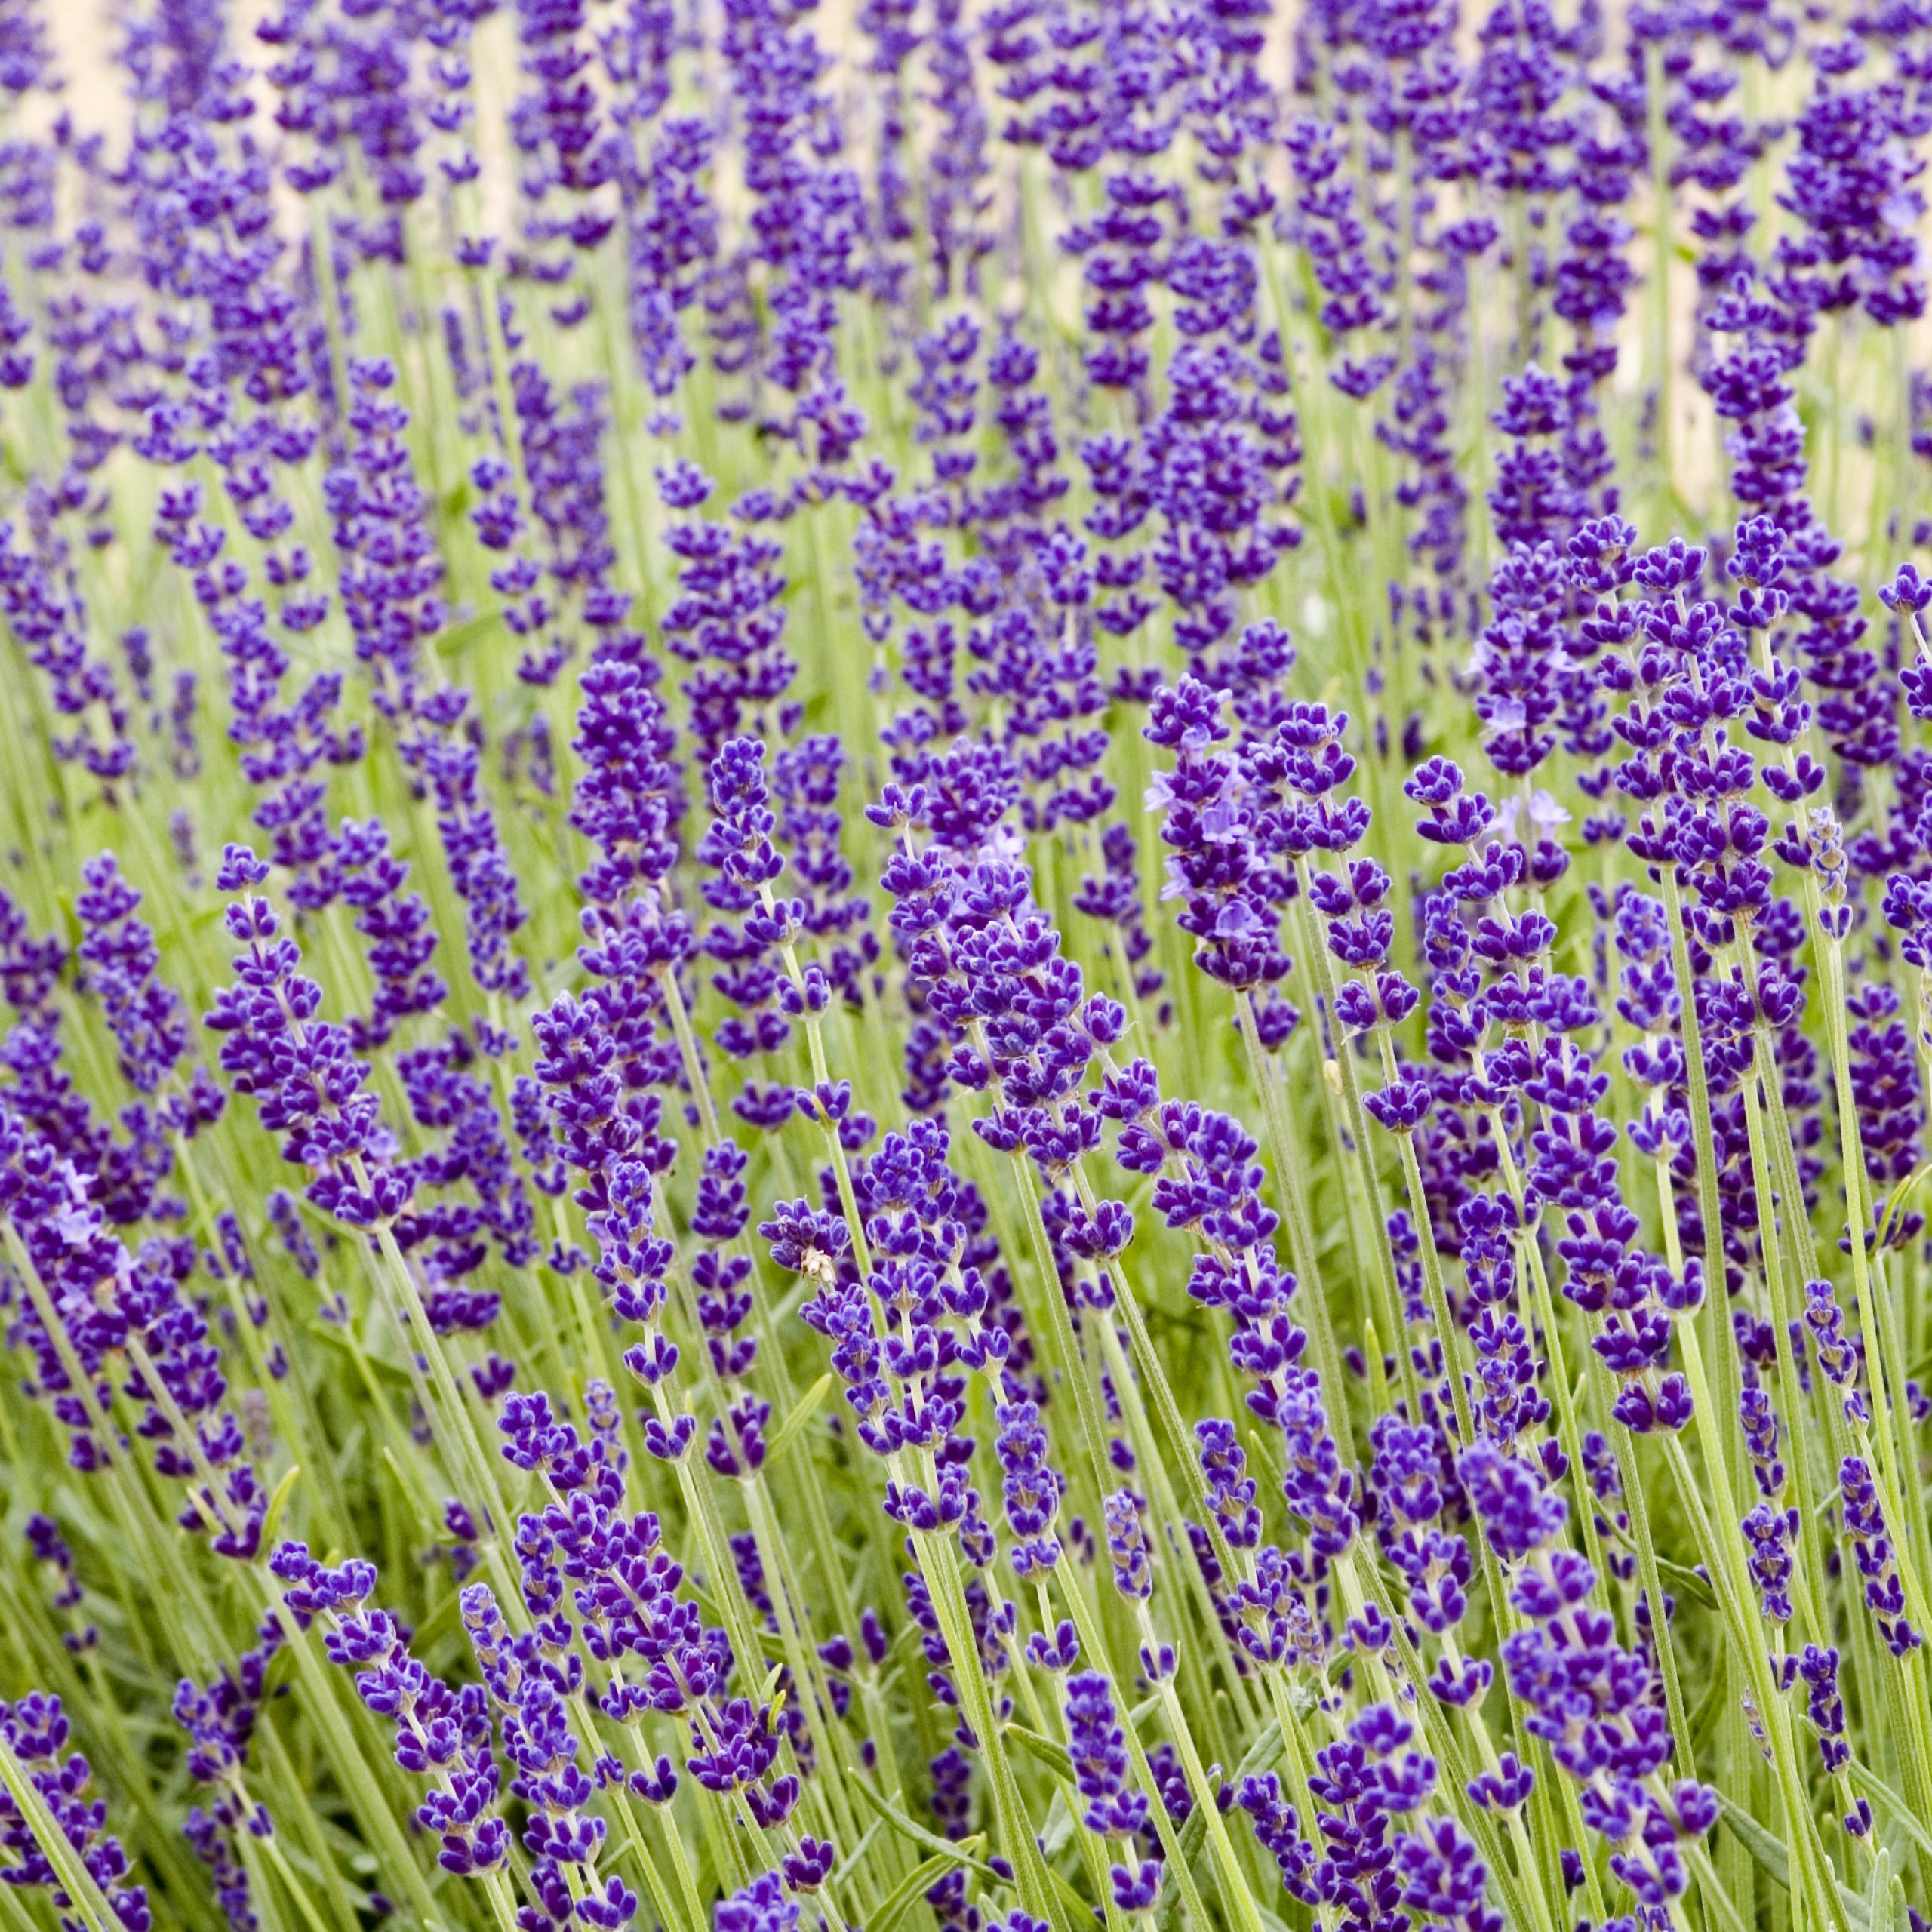 Lavender deep blue - Lavandula angustifolia Hidcote, aromatic shrub, herb